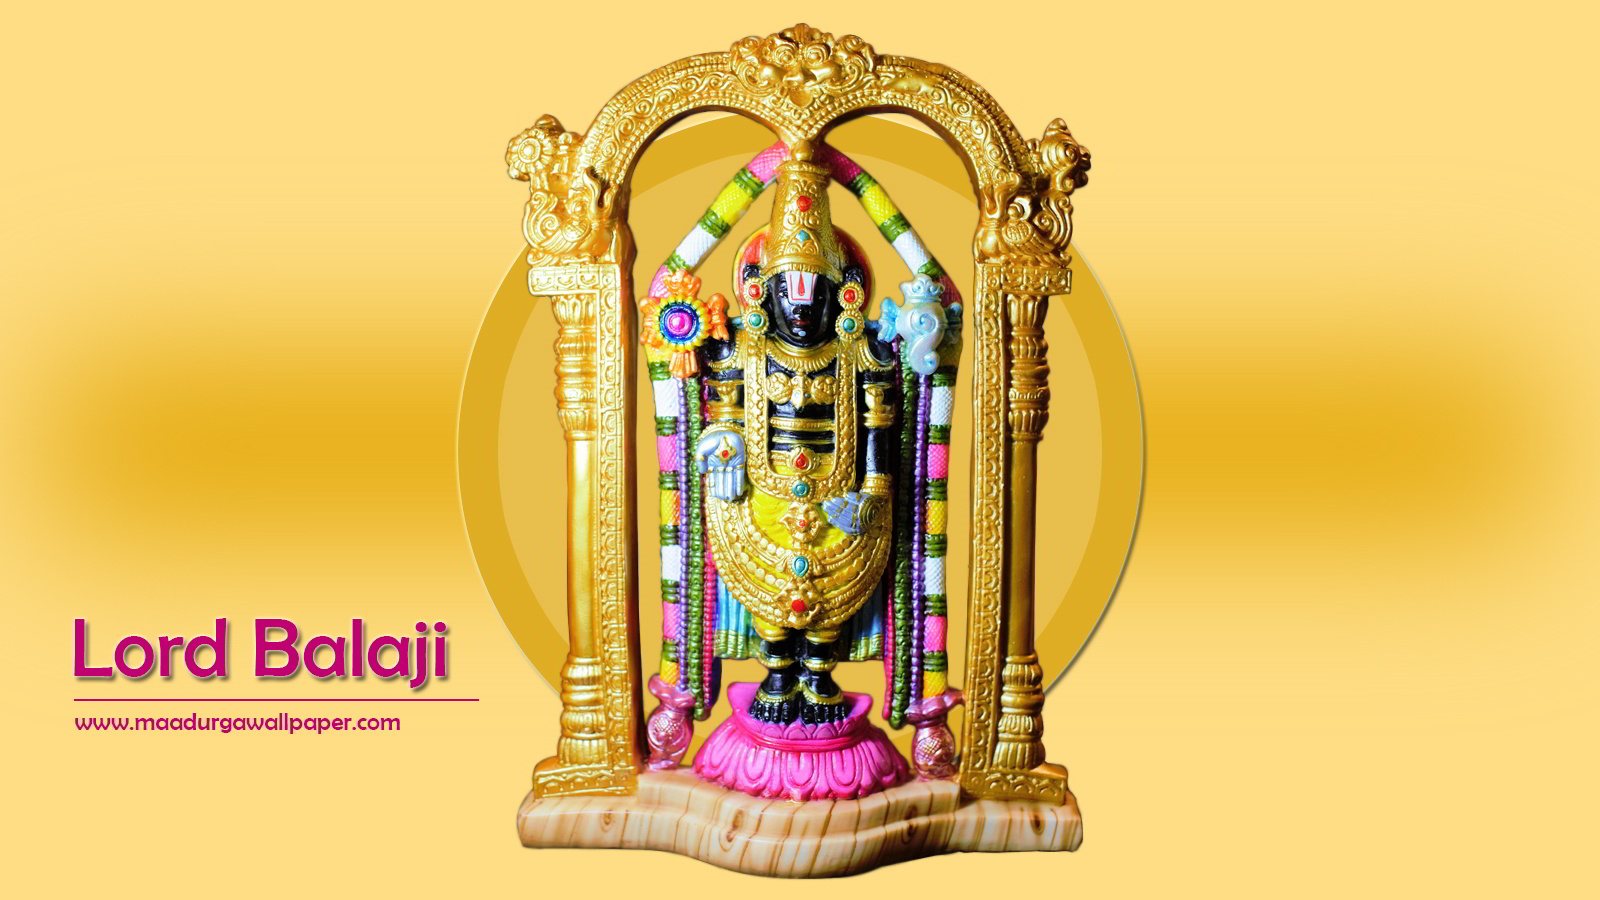 Lord Balaji Wallpapers, Pics, Hd Images - God Tirupati Balaji - 1600x900  Wallpaper 